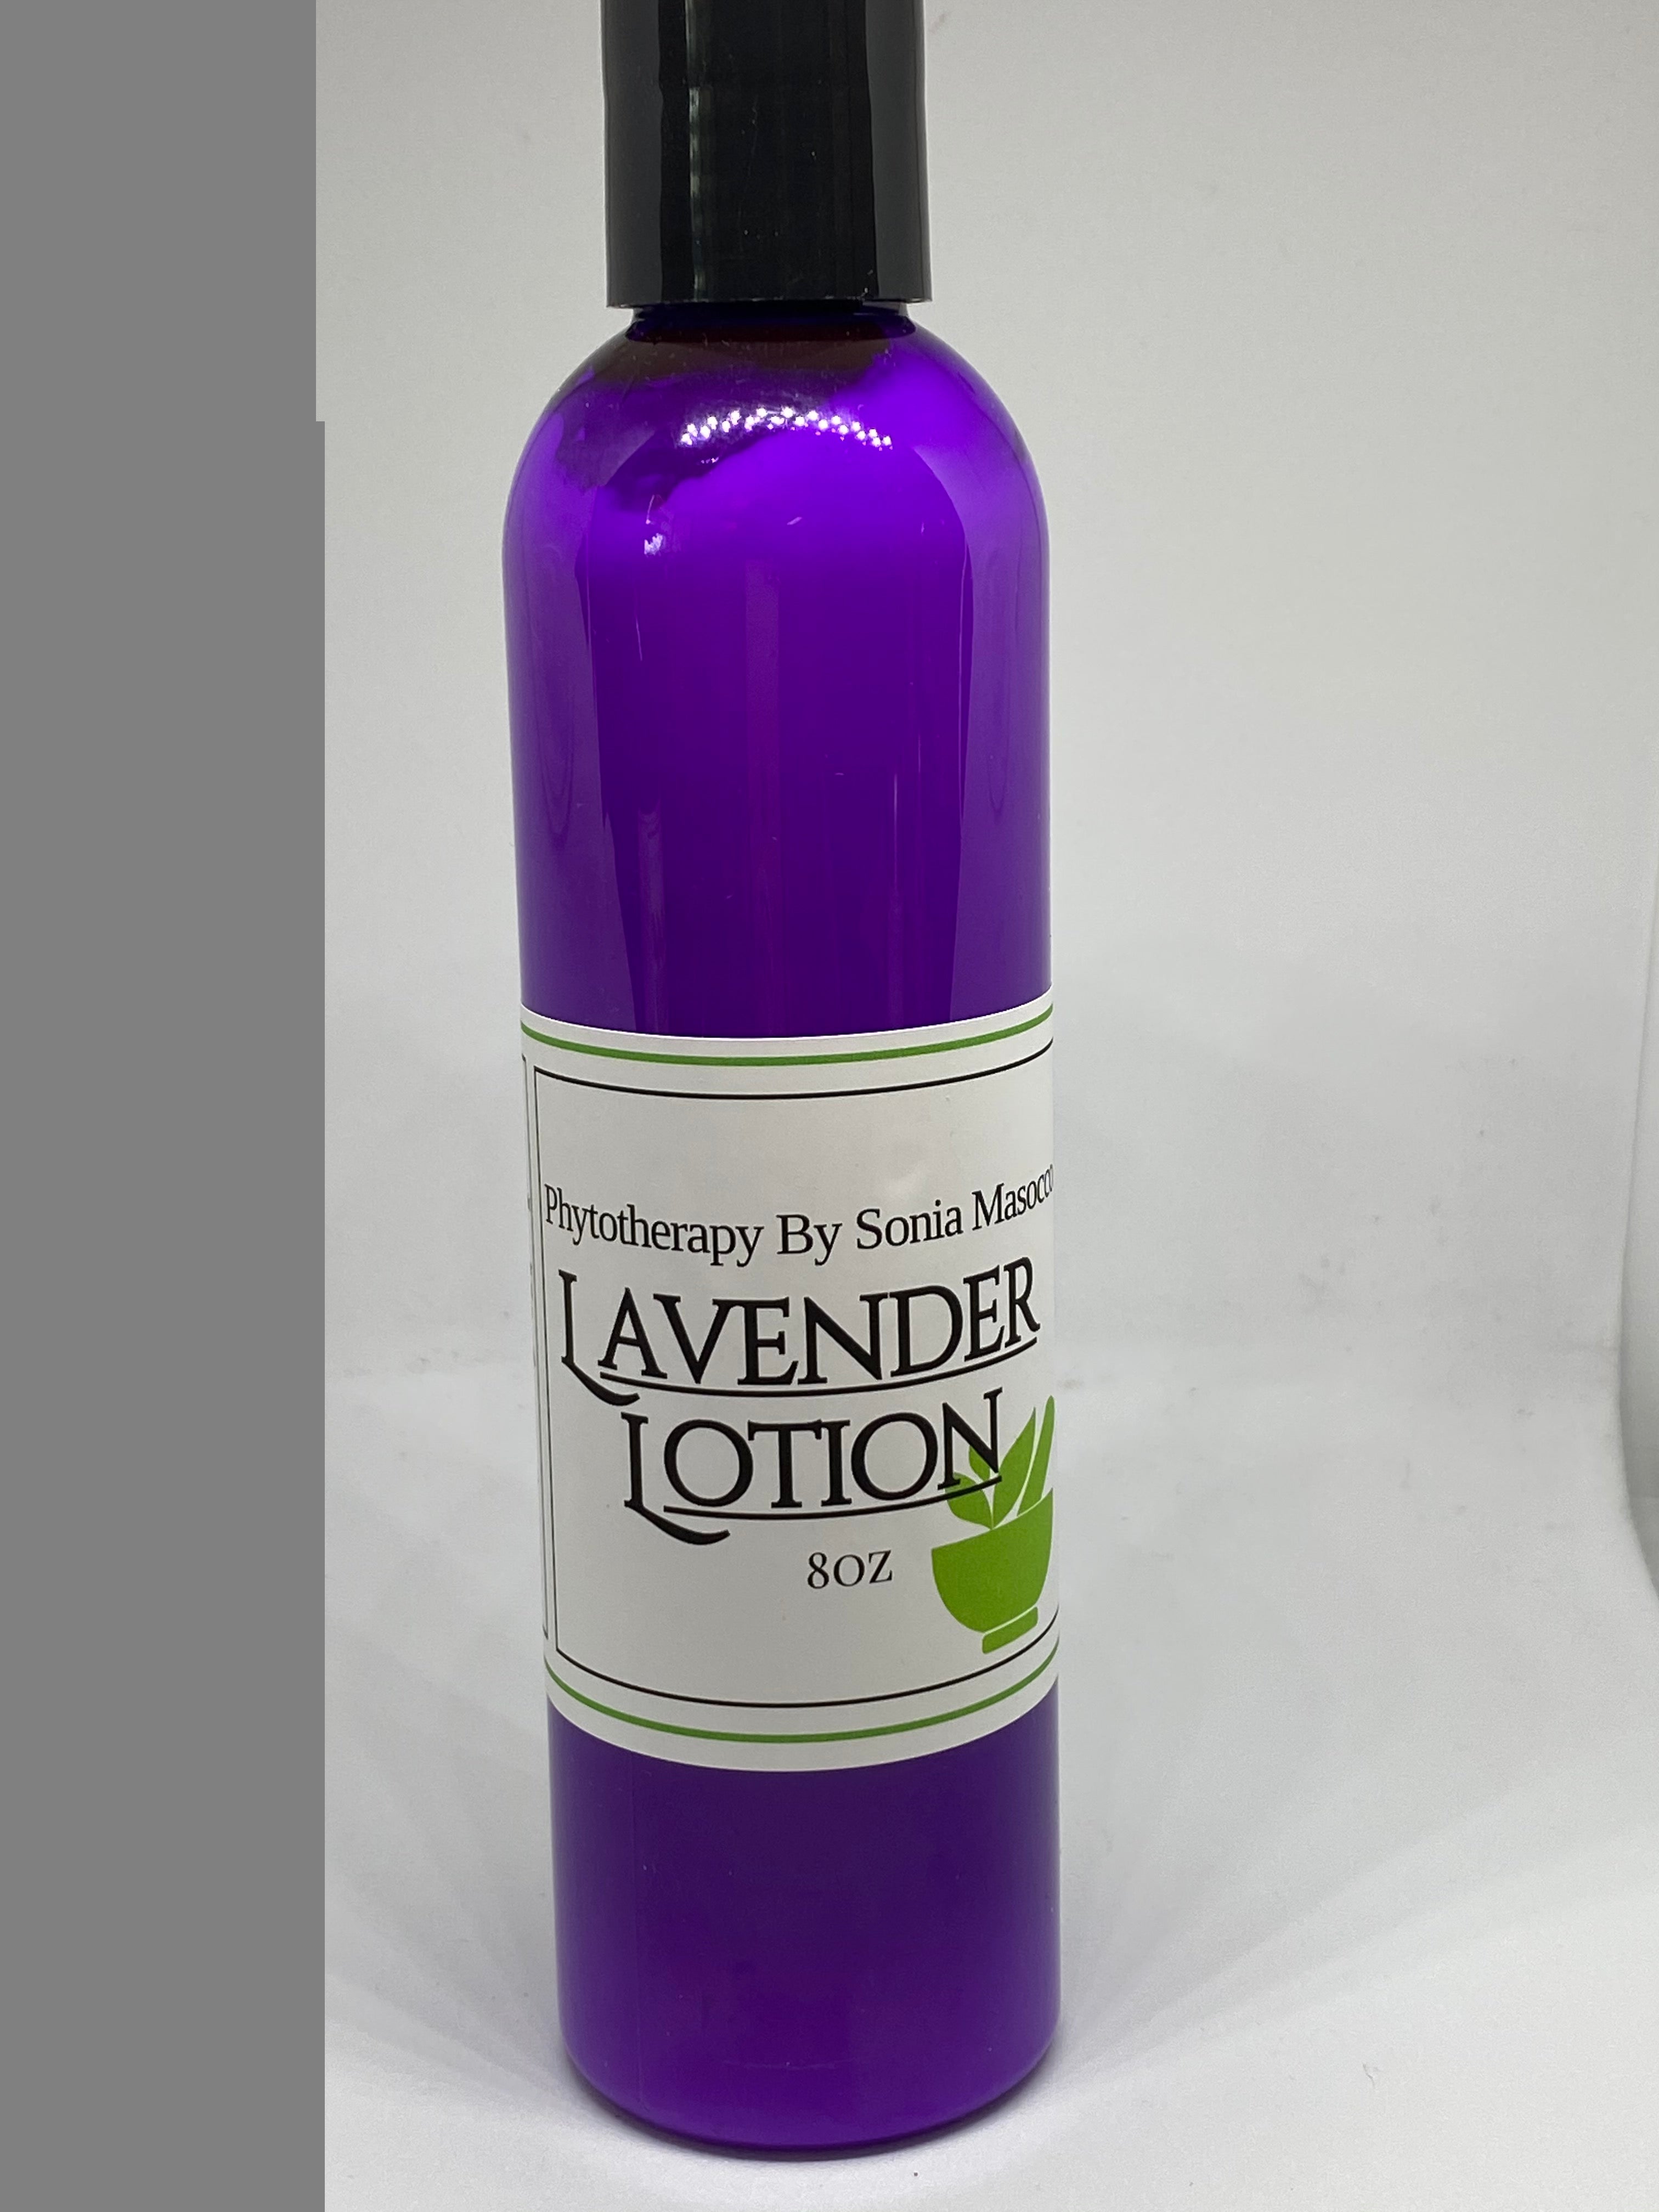 HS - Lavender lotion